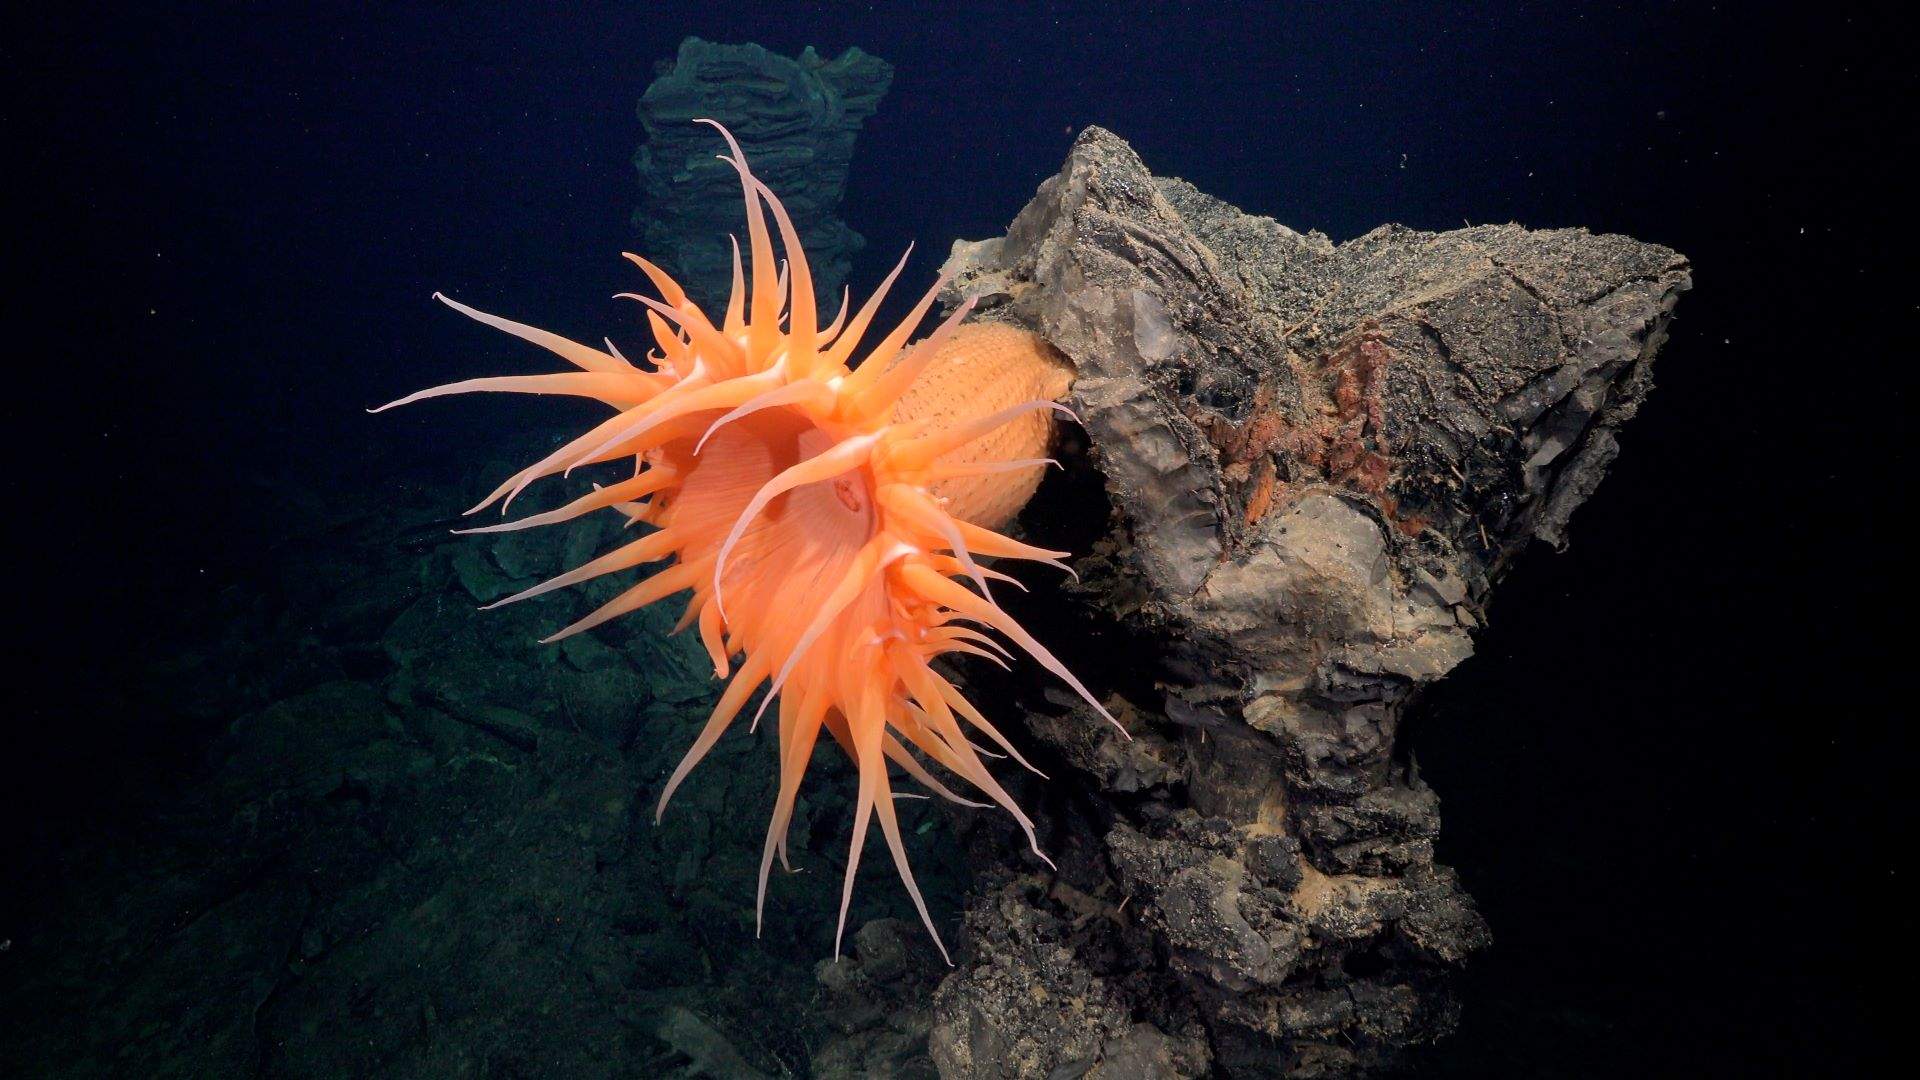 Una investigación liderada por una bióloga catalana descubre más de 50 nuevas especies submarinas